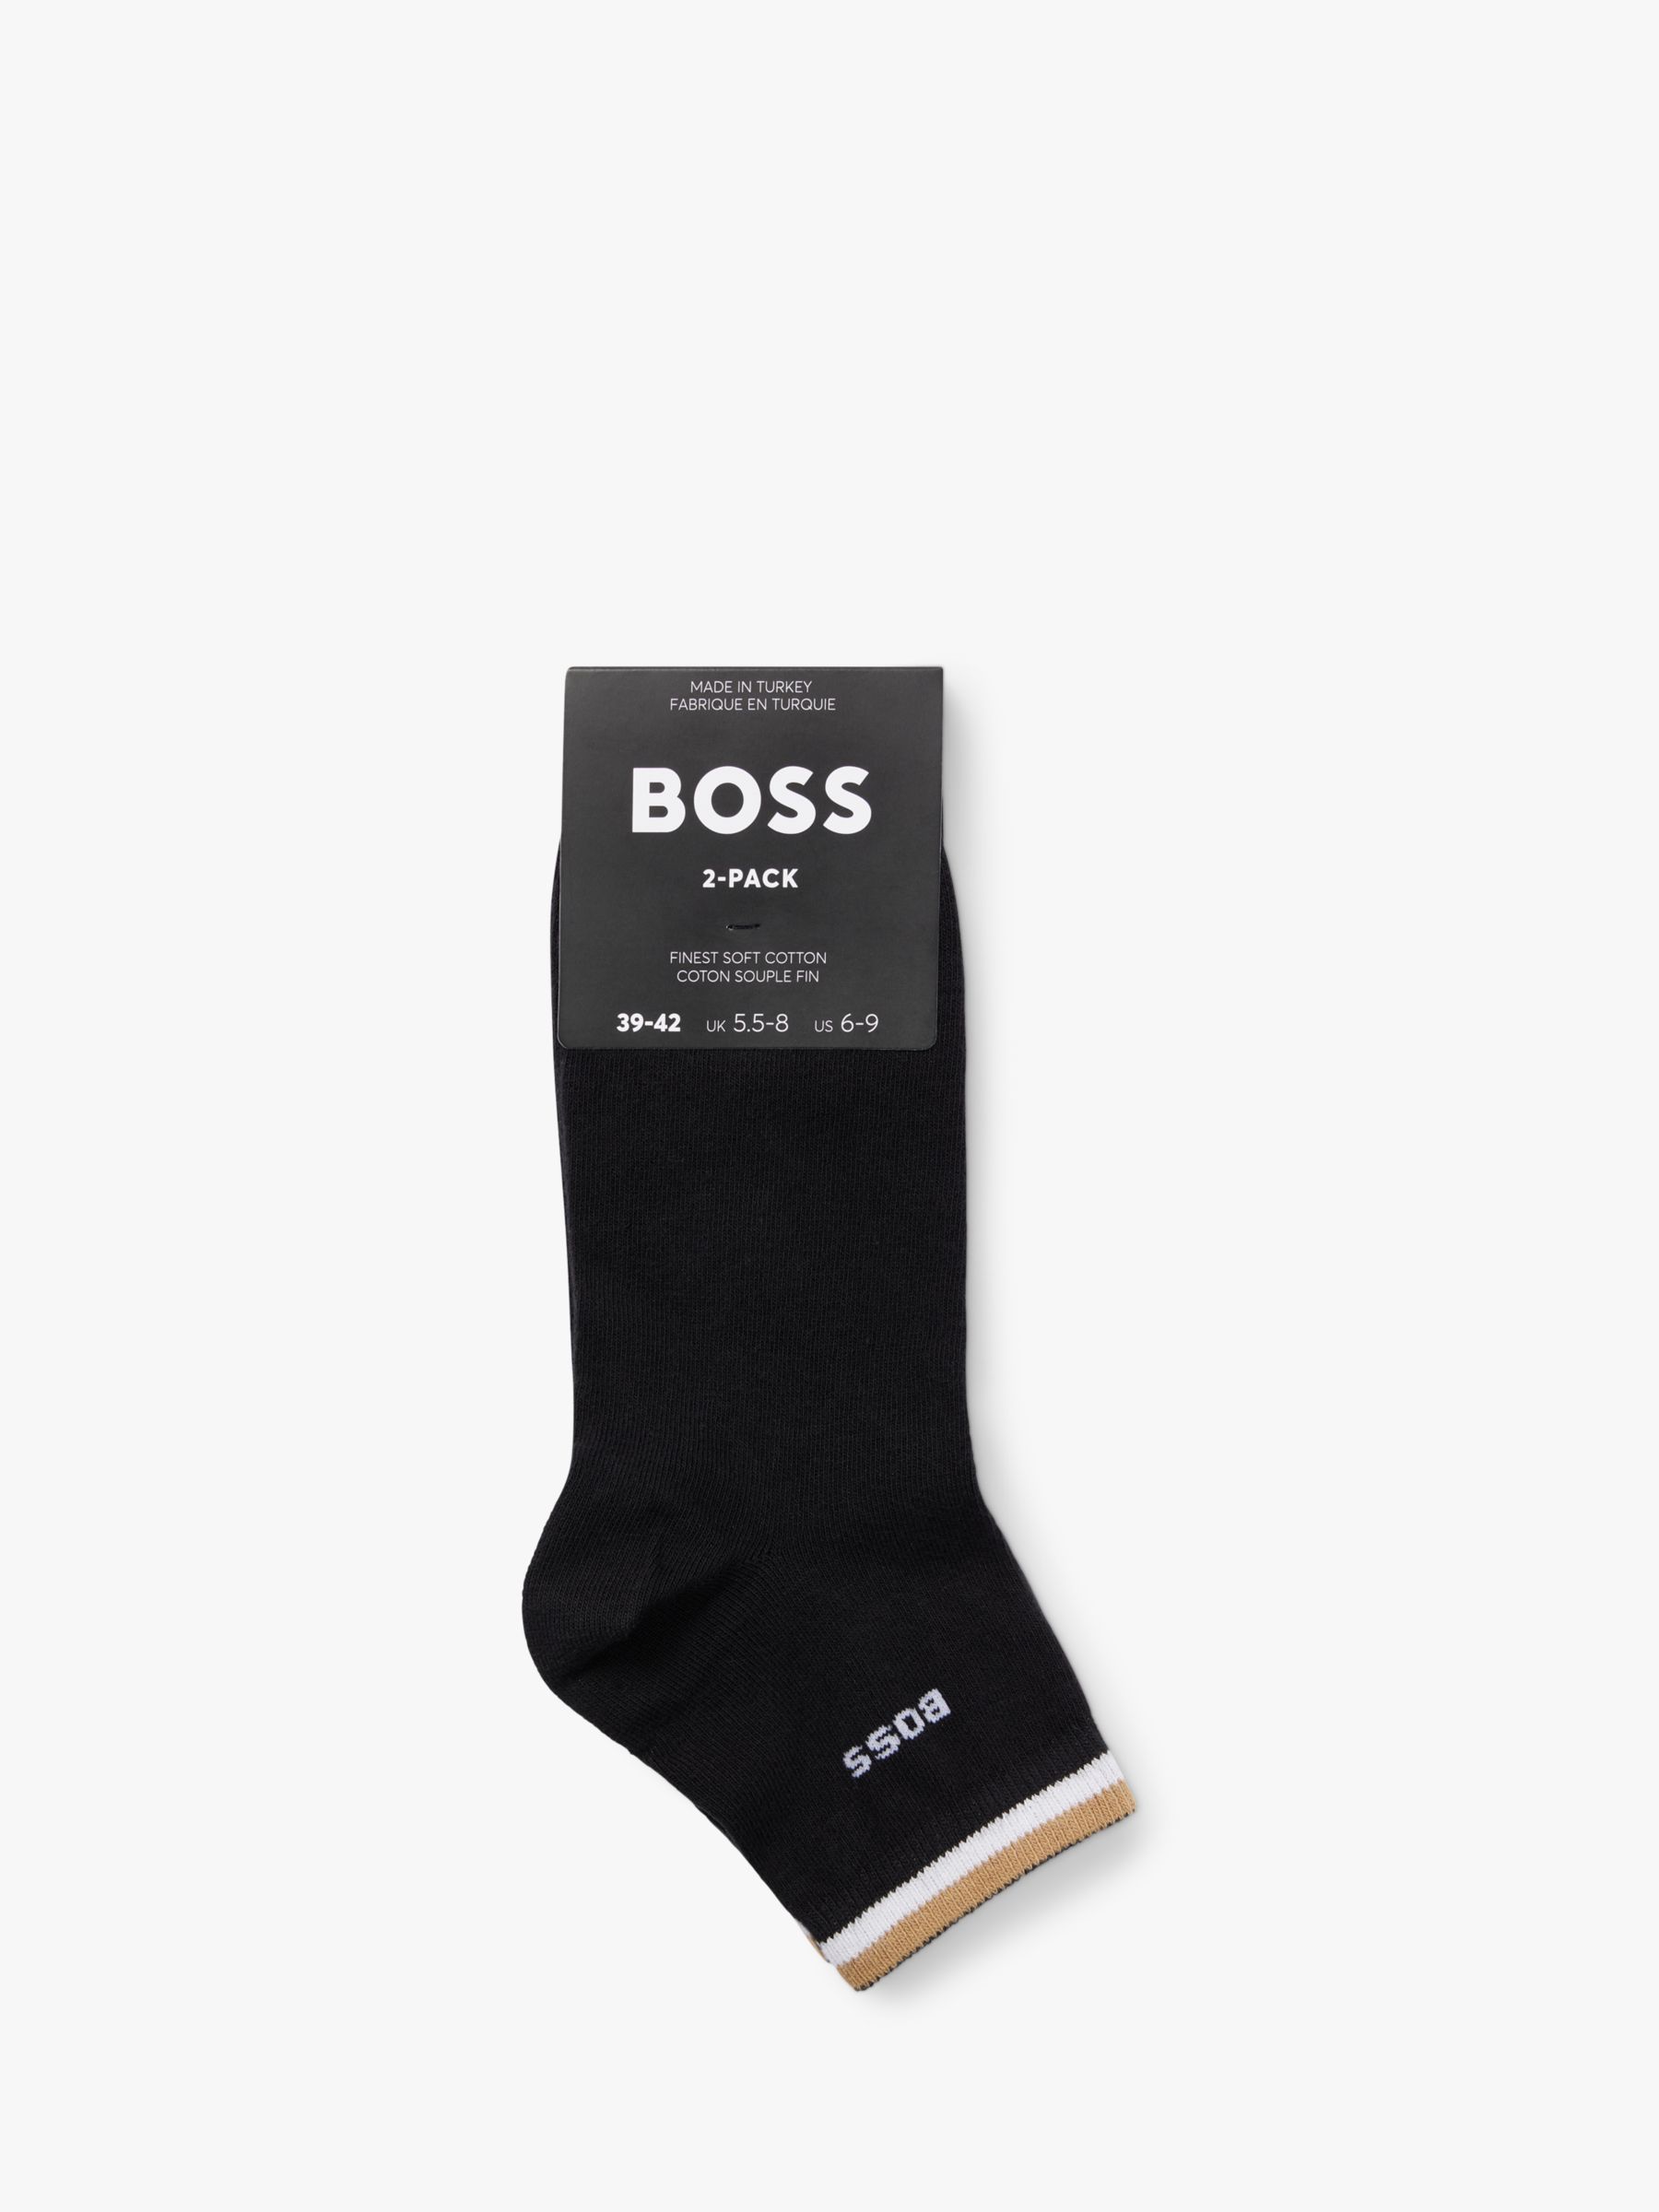 Buy BOSS Stripe Logo Trainer Socks Online at johnlewis.com